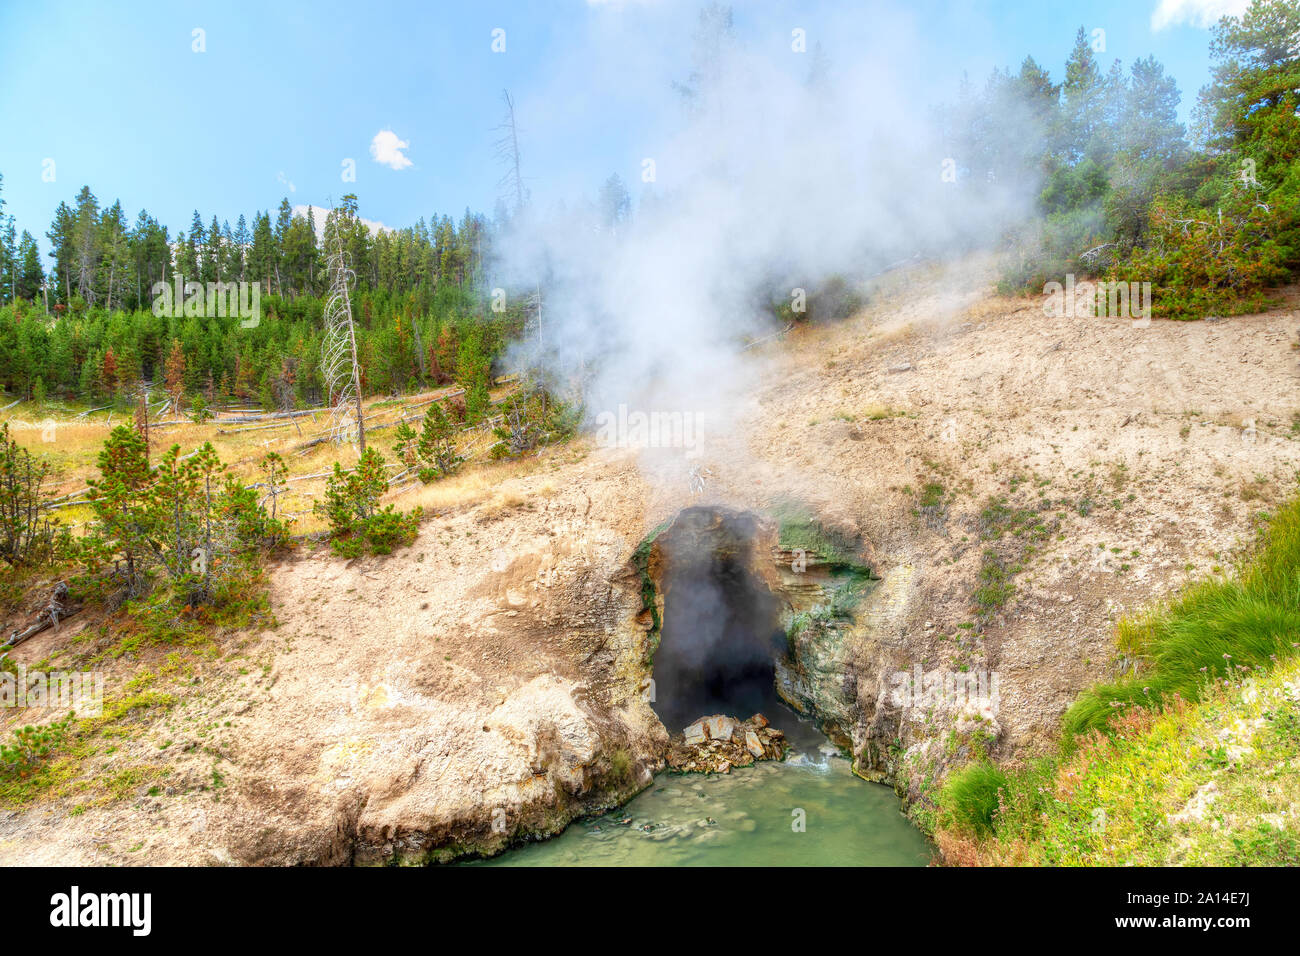 La vapeur s'élève de la bouche du Dragon caverne de printemps au Parc National de Yellowstone dans le Wyoming, États-Unis. Banque D'Images